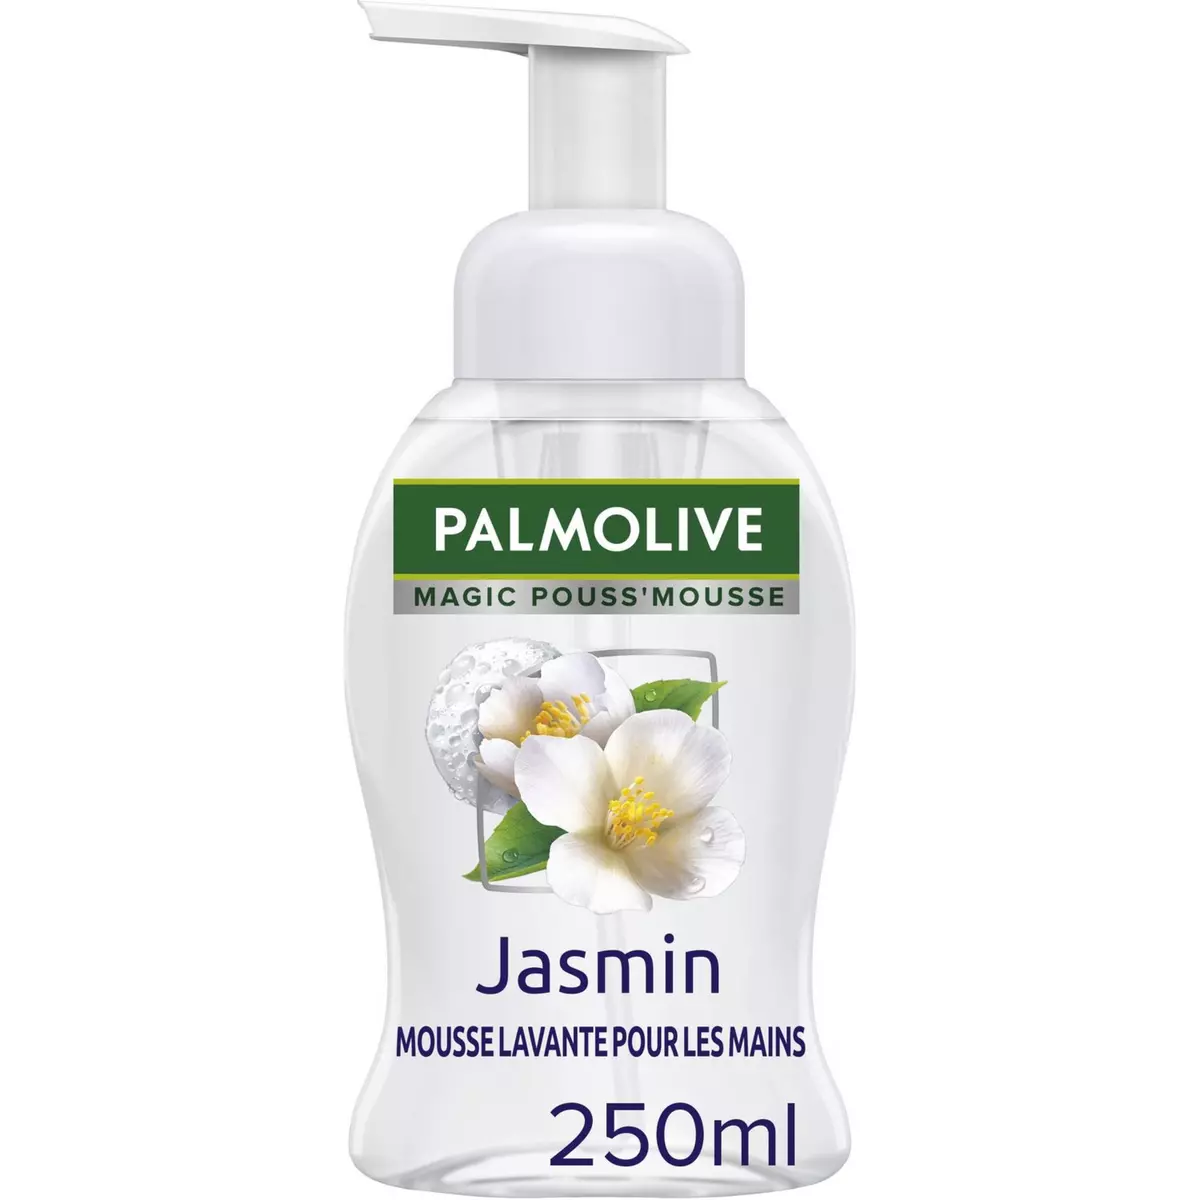 PALMOLIVE Mousse lavante pour les mains parfum jasmin 250ml